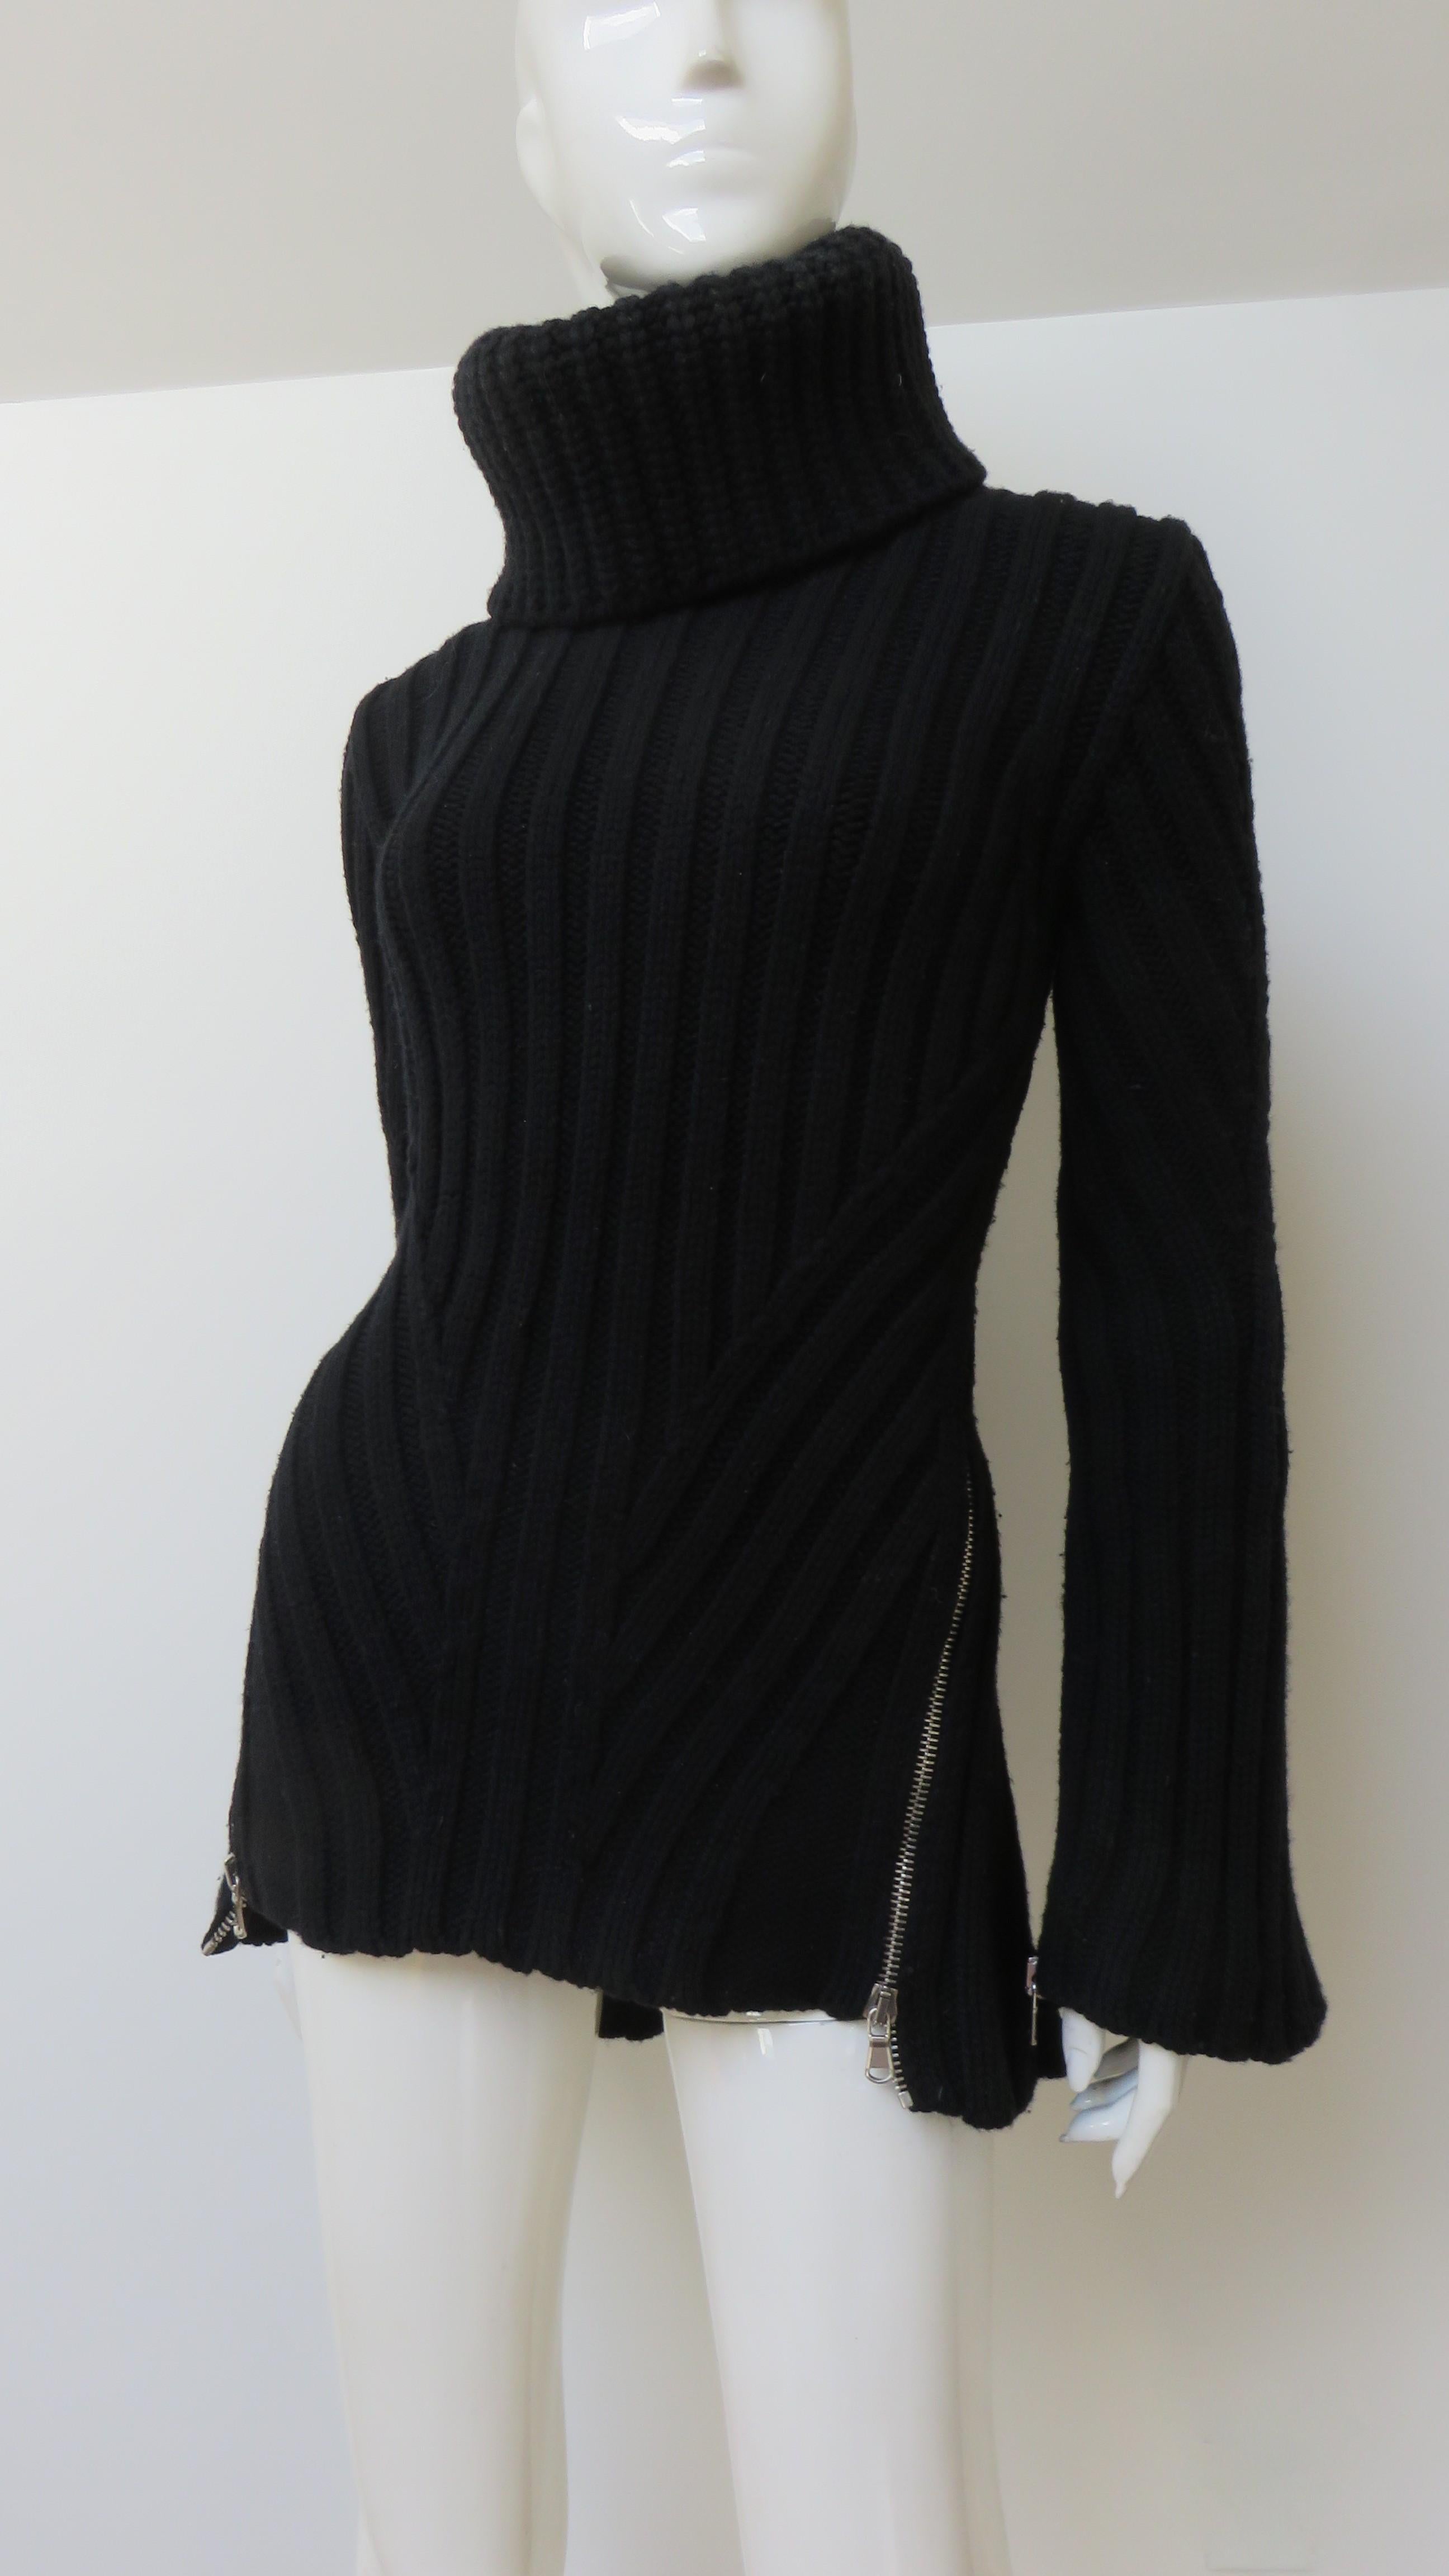 Women's Alexander McQueen Turtleneck Sweater with Zippers